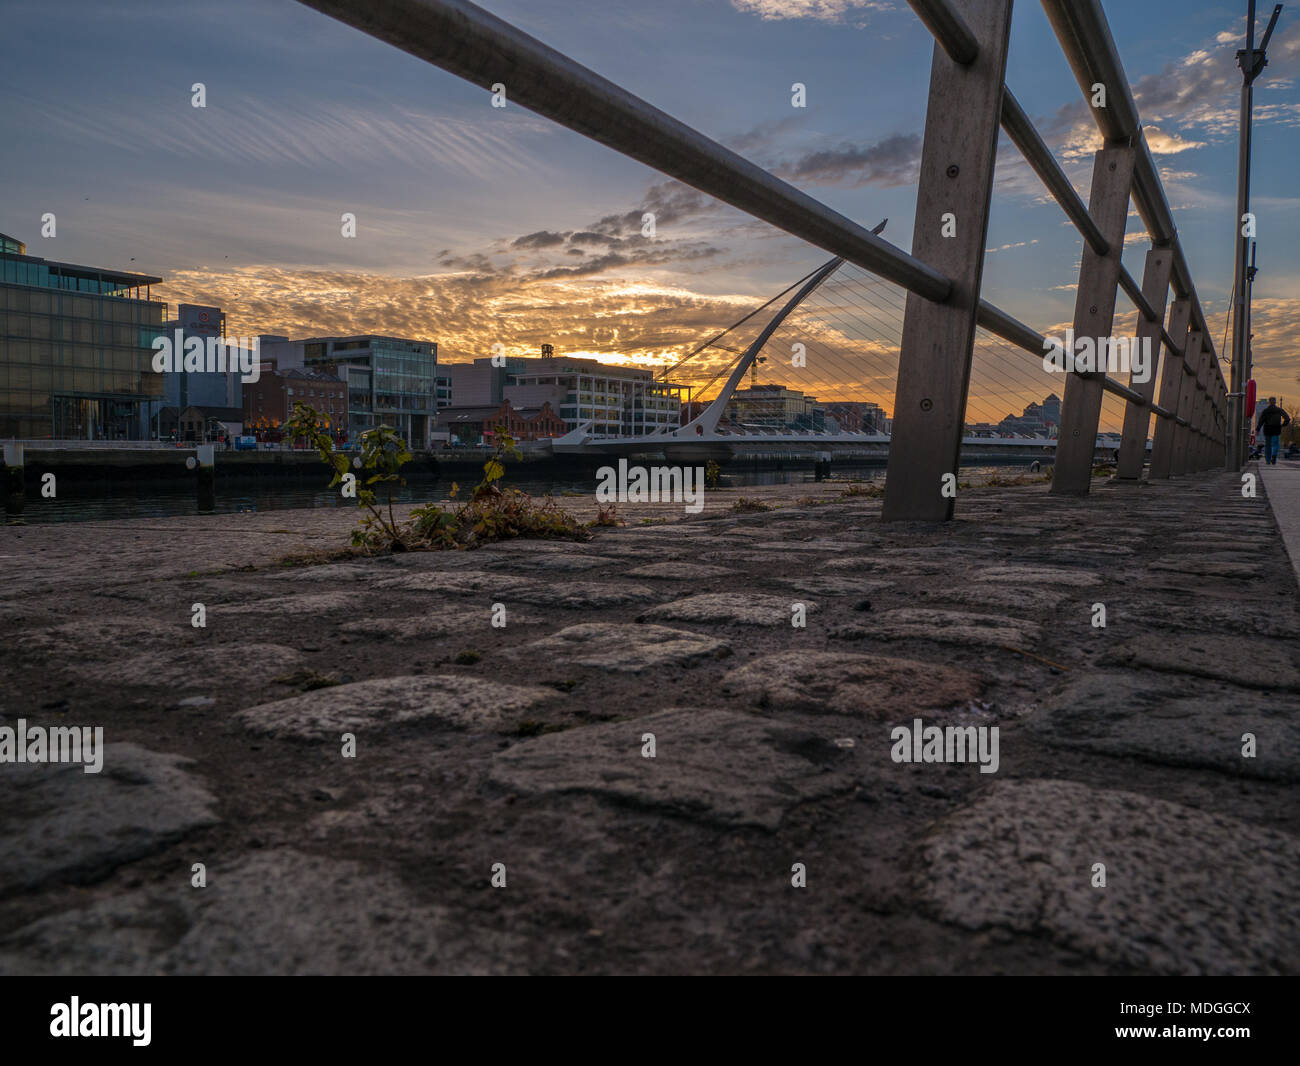 Dublino, Irlanda - Dublino Quays al tramonto, che si affaccia sul fiume Liffey e Samuel Beckett Bridge comunemente noto come il Ponte di arpa. Foto Stock